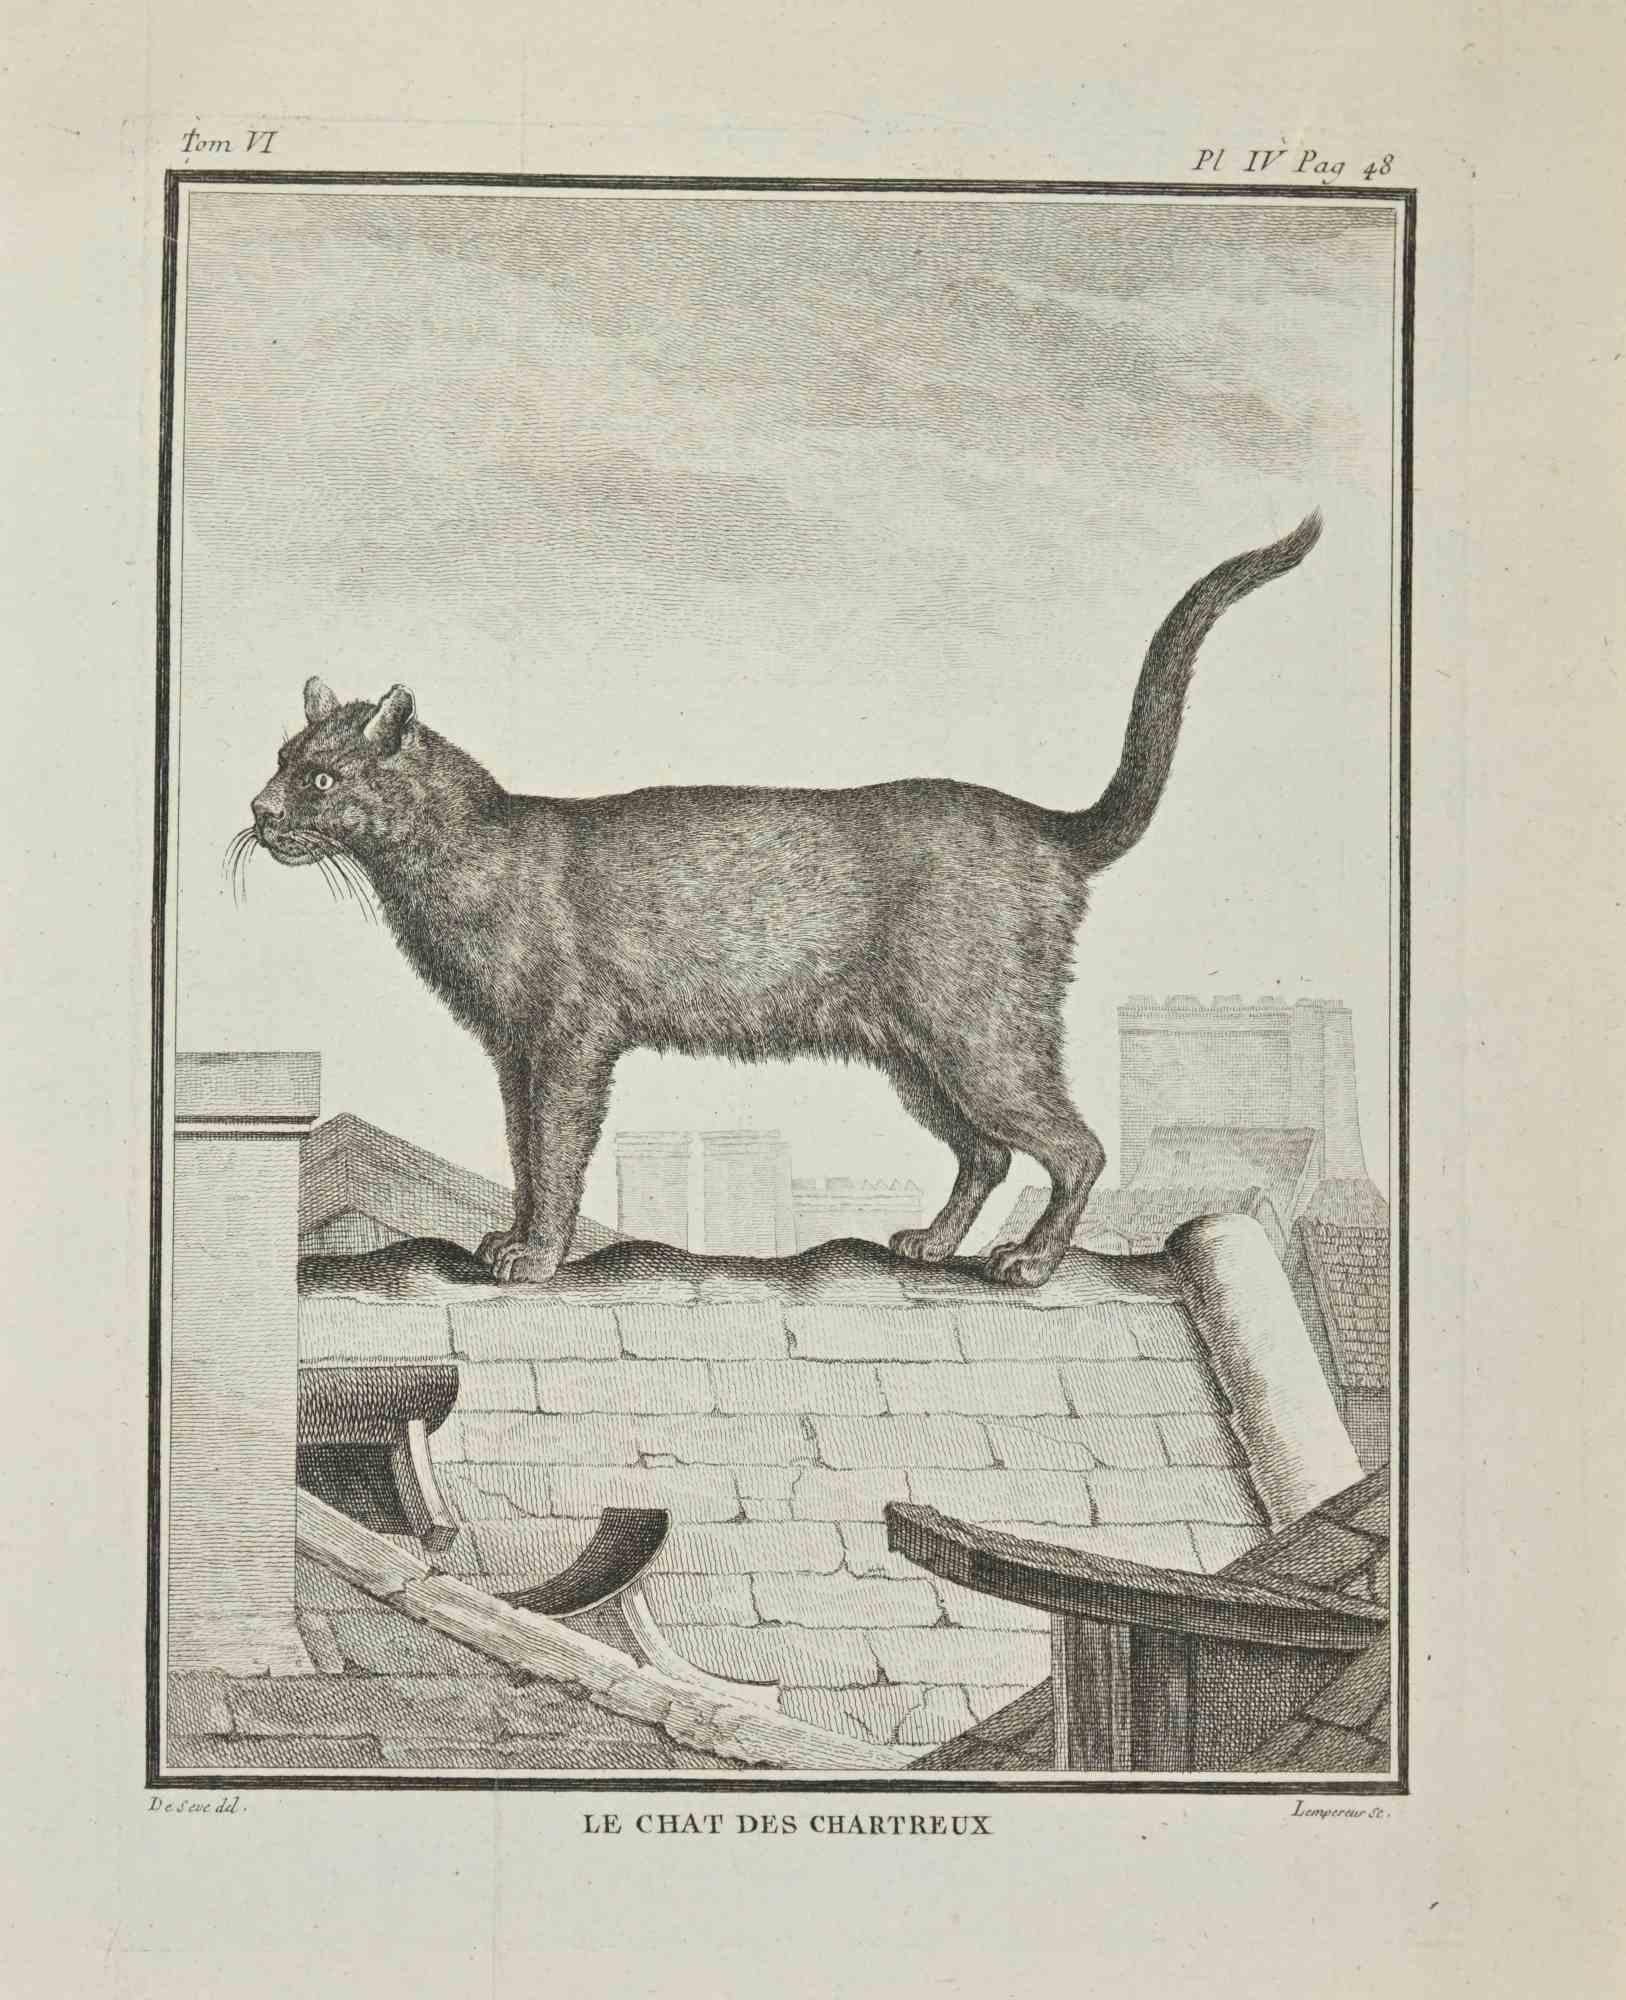 Le Chats Des Chartreux est une eau-forte réalisée par Louis-Simon Lempereur en 1771.

Il appartient à la suite "Histoire naturelle, générale et particulière avec la description du Cabinet du Roi".

Signature de l'Artistics gravée en bas à